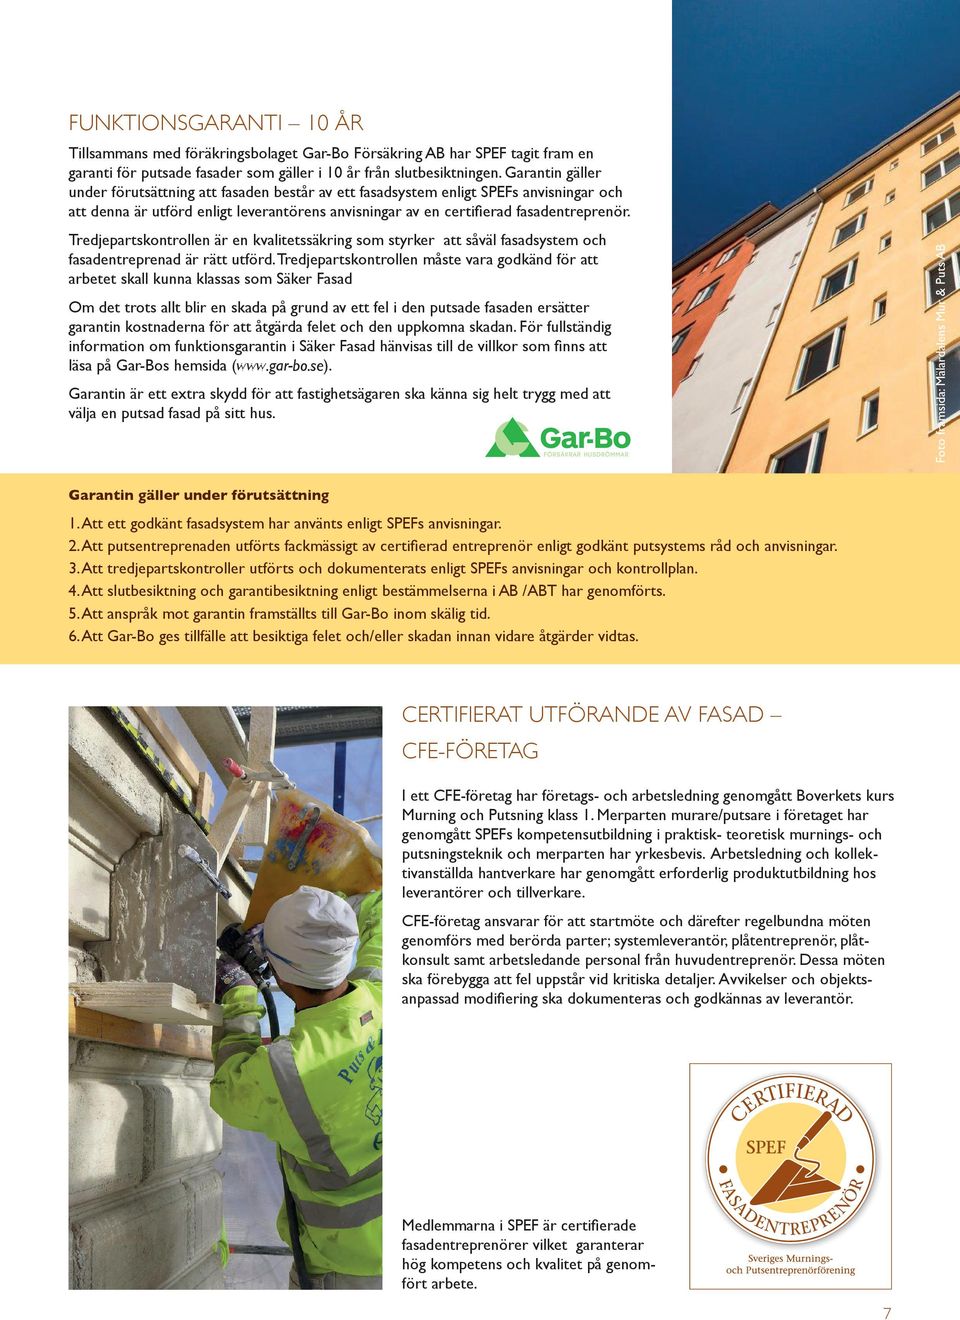 Tredjepartskontrollen är en kvalitetssäkring som styrker att såväl fasadsystem och fasadentreprenad är rätt utförd.